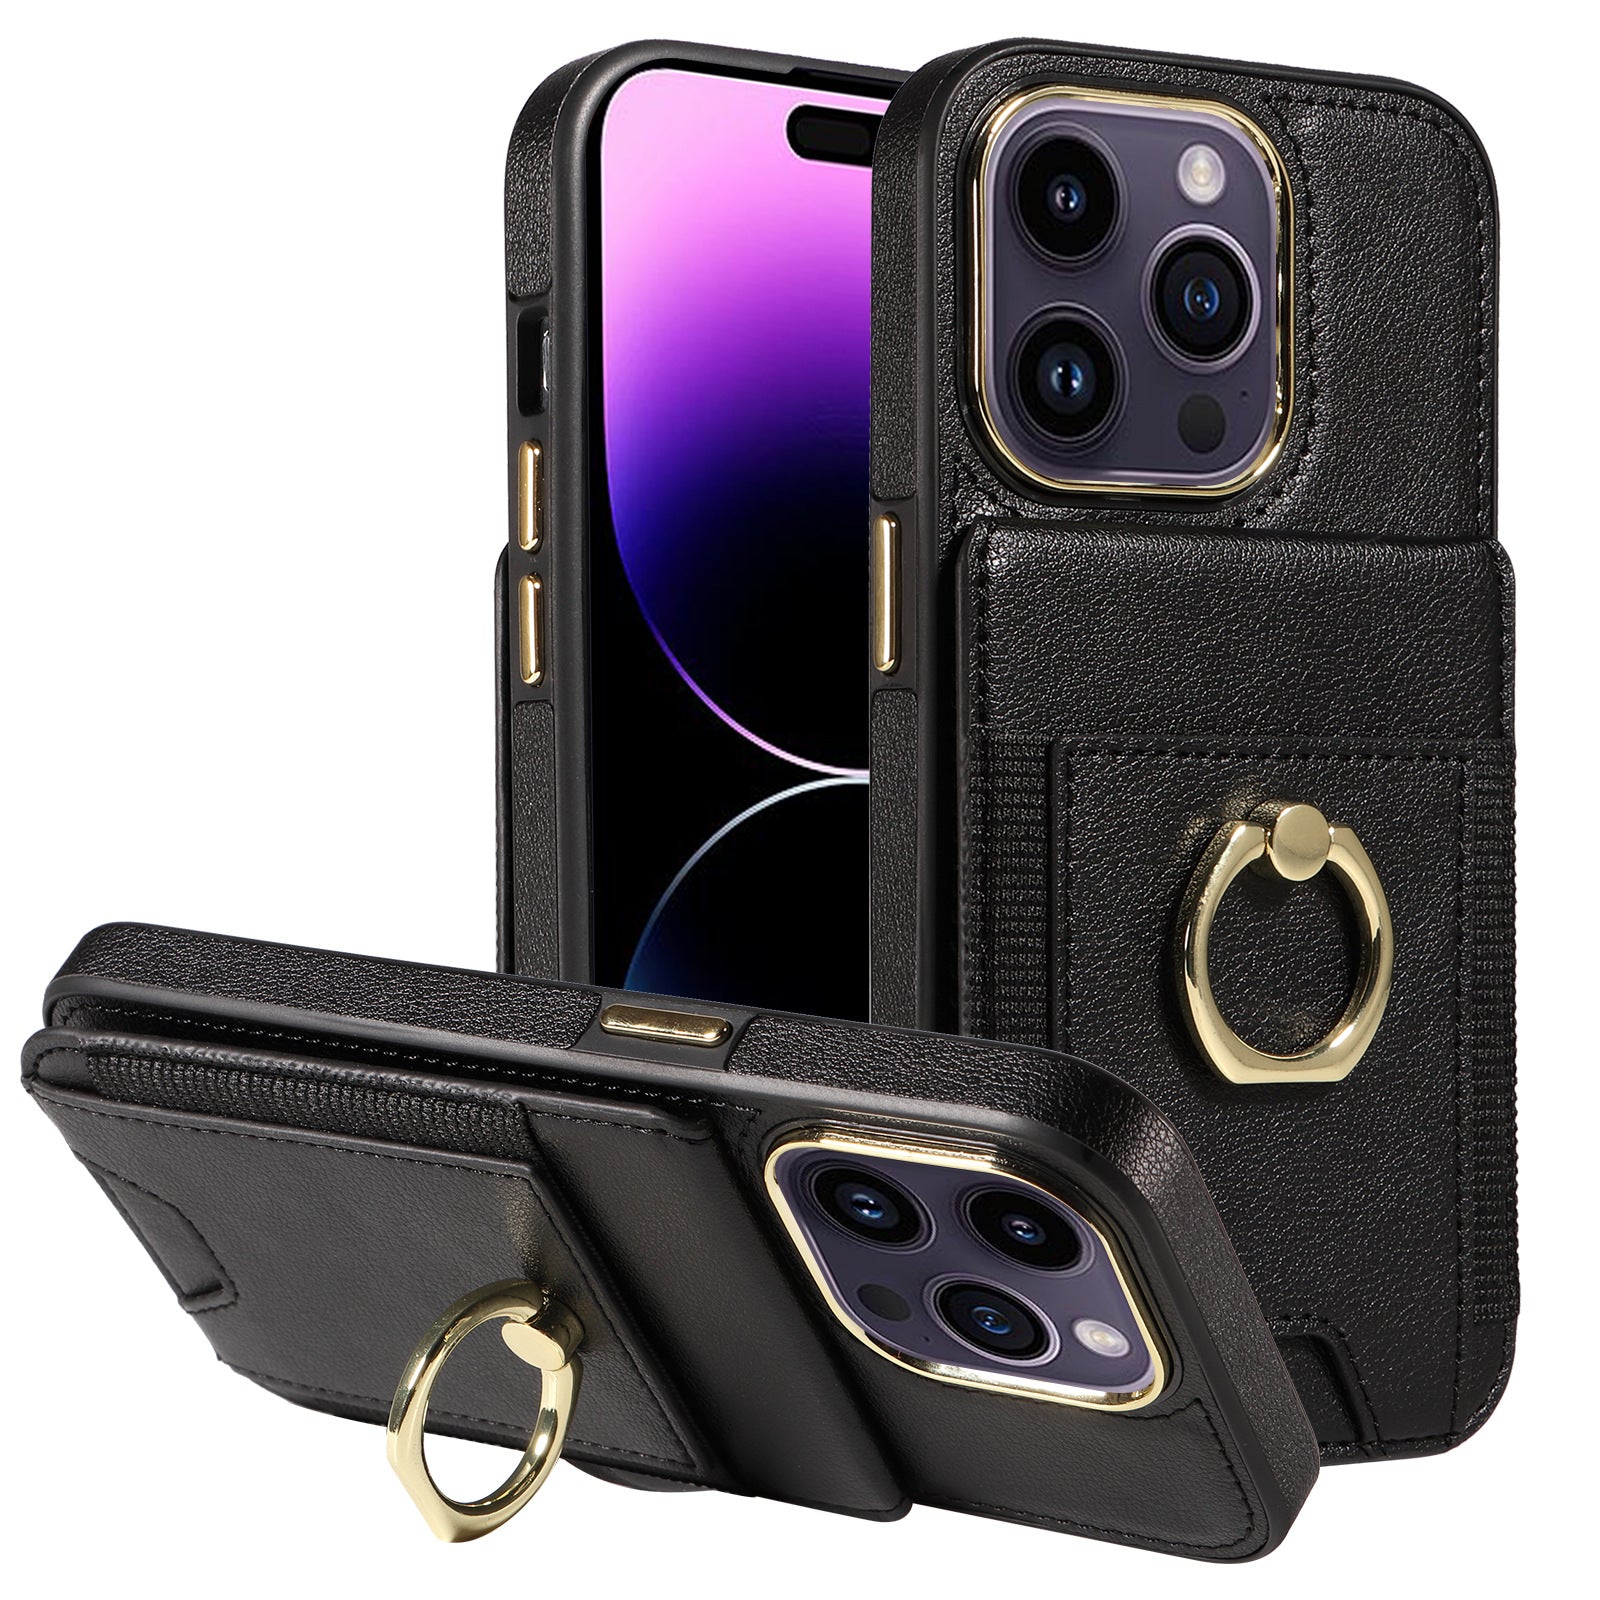 Handmade luxury iPhone leather case